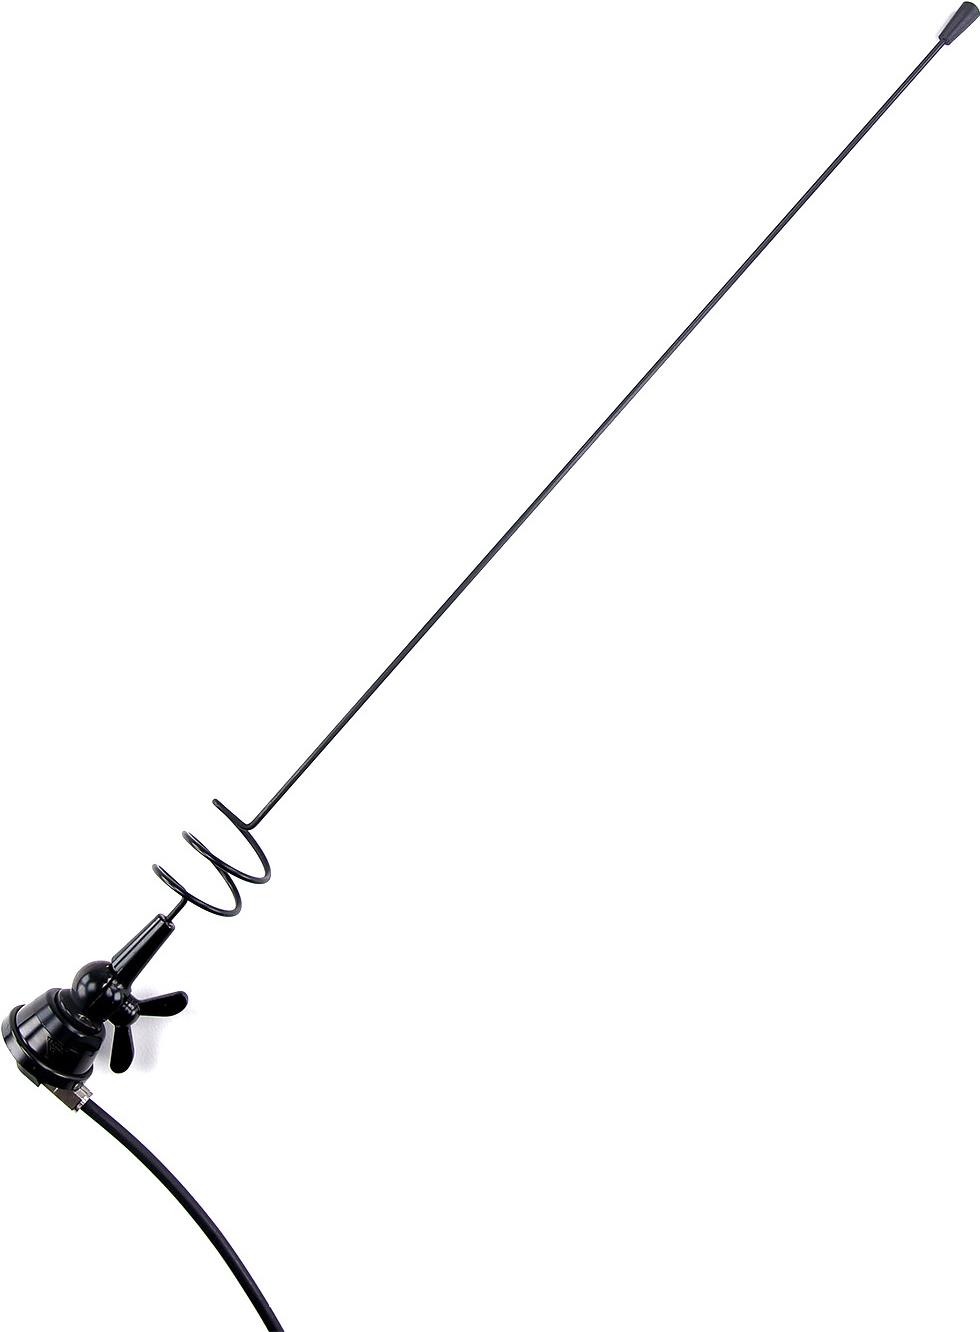 Procom MU 3-BZP4/TETRA/l, 5/8 Lambda Auto-Funkantenne, 380-400 MHz, 3 dB, 4 m Kabel mit FME(f) Schwarz verchromter Edelstahlstrahler für Kugelkopfbefesti-gung, Edelstahl-Antennenfuß (schwarz) mit Kugelgelenk undFlügelschraube, Länge: ca. 49 cm, absti